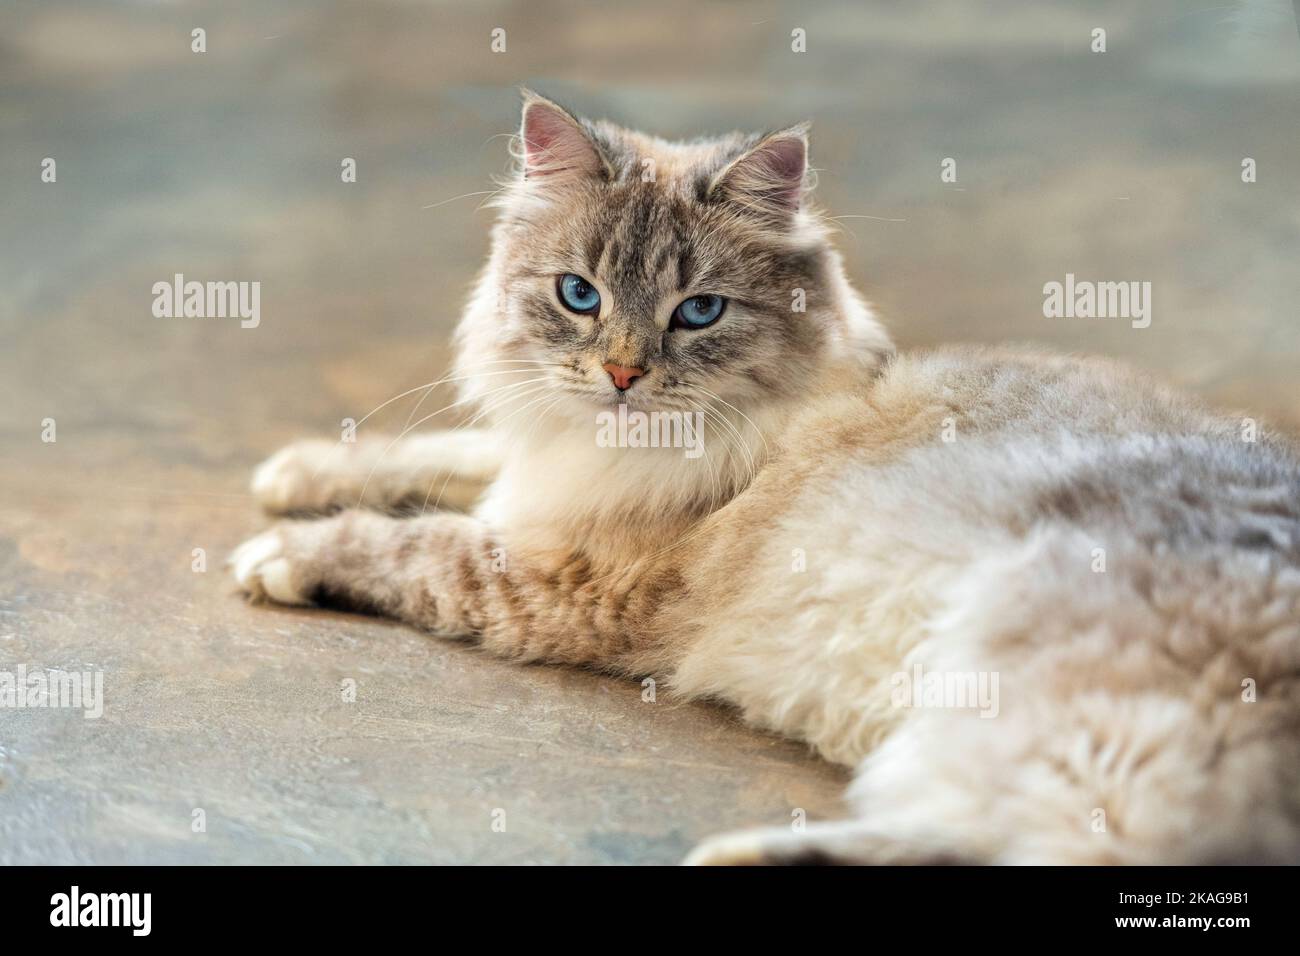 Gato siberiano tumbado en suelo de baldosas Foto de stock